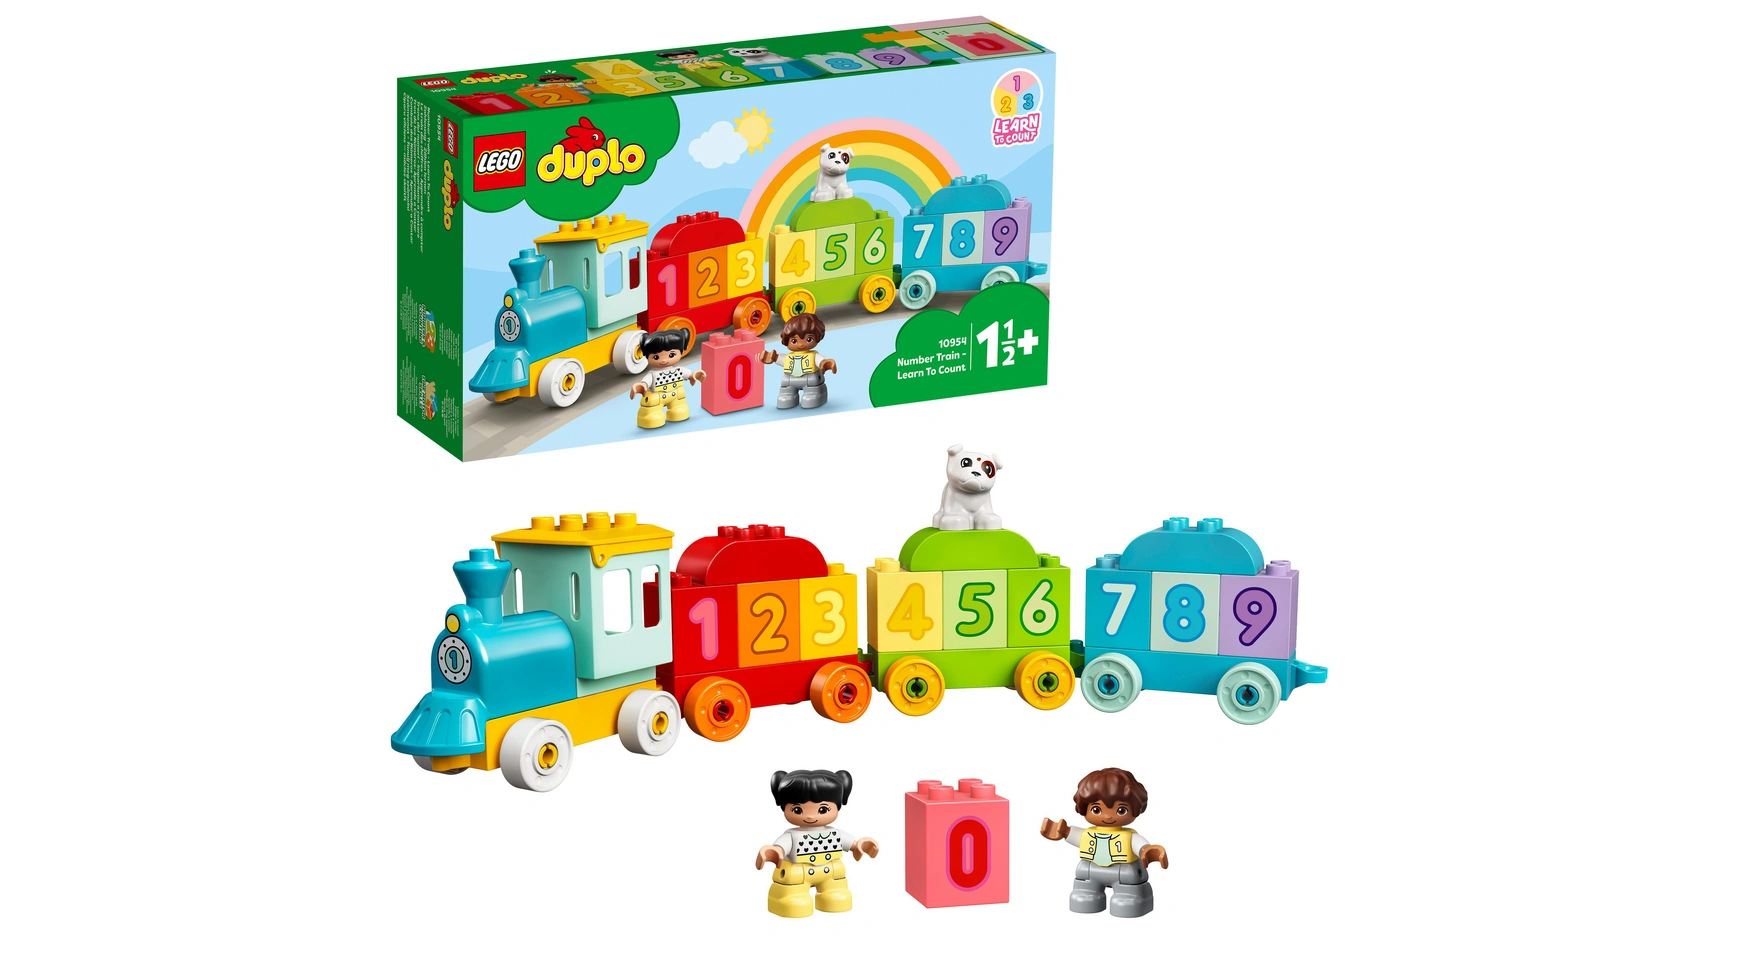 Lego DUPLO Цифровой поезд Учимся считать, детская игрушка, поезд конструктор lego dacta duplo 9125 intelligent train set